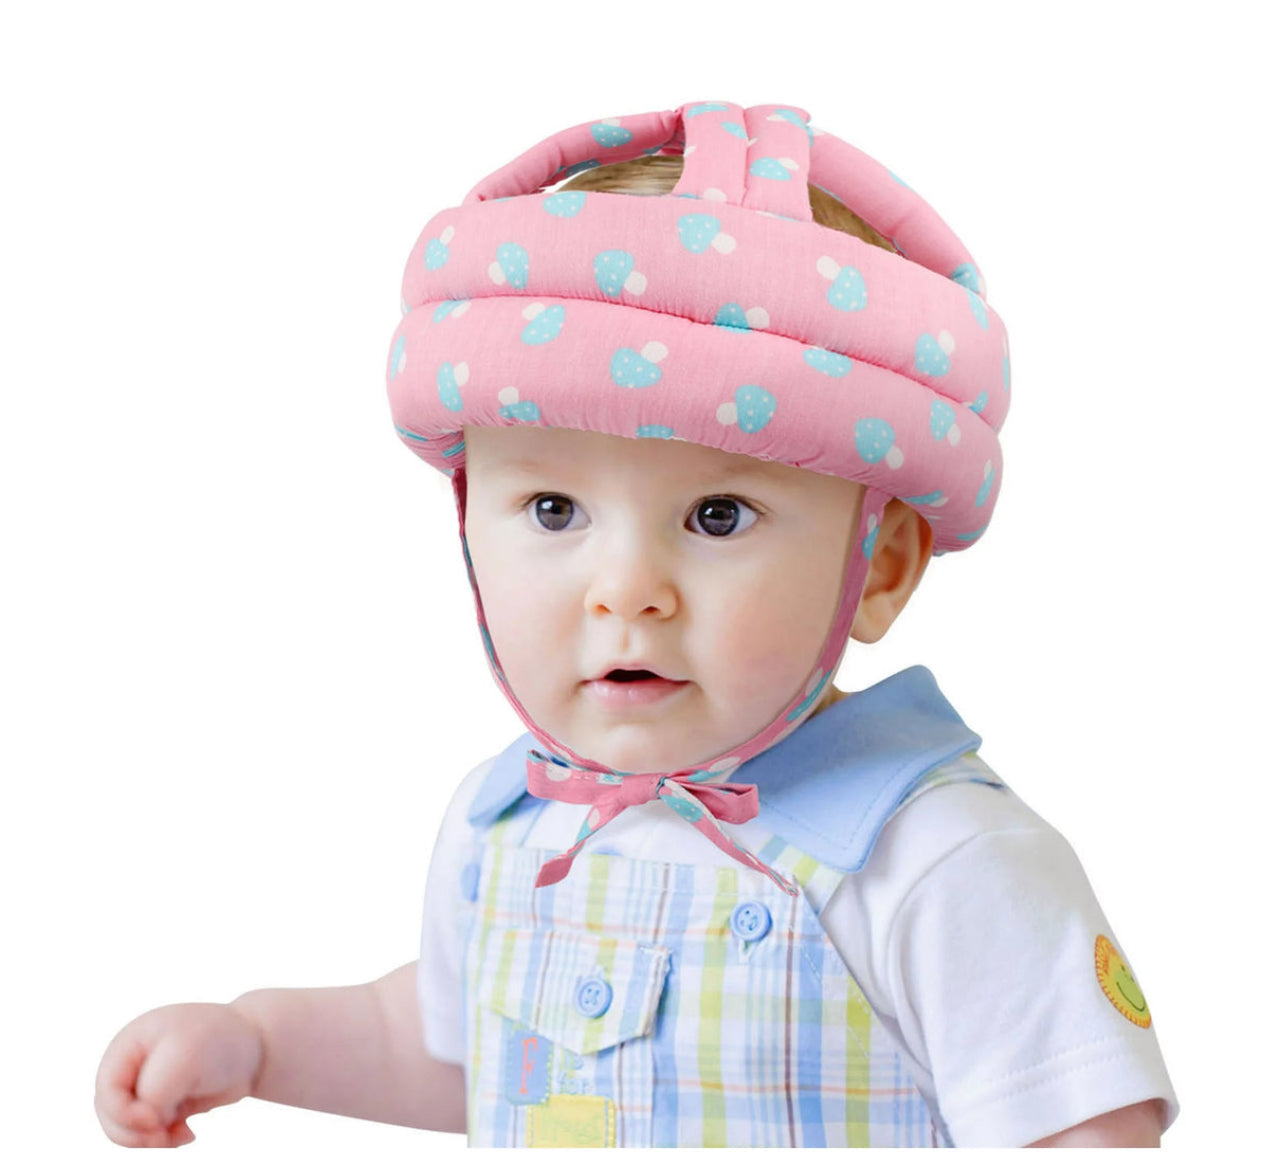 Baby protector Helmet